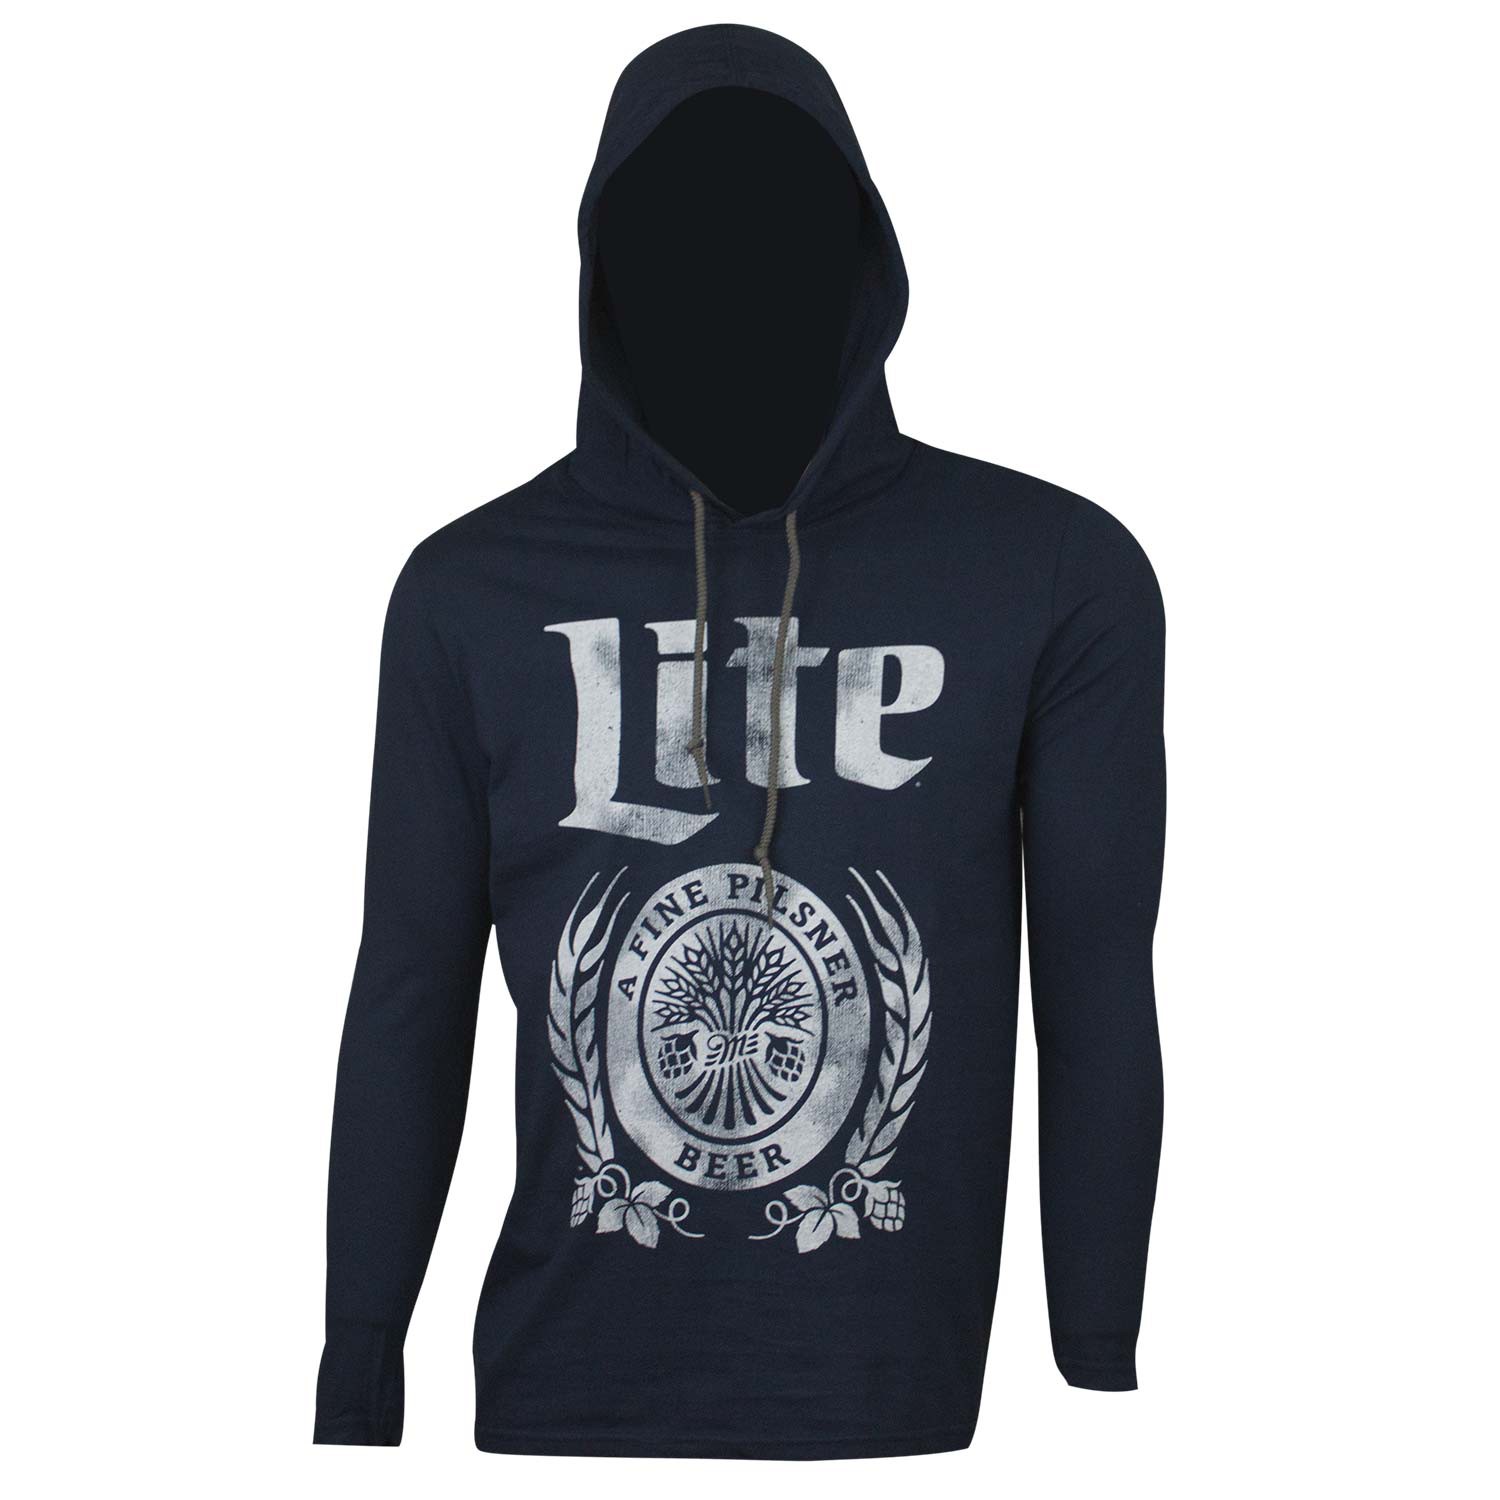 Miller Lite Beer Men's Blue Long Sleeve Hoodie T-Shirt